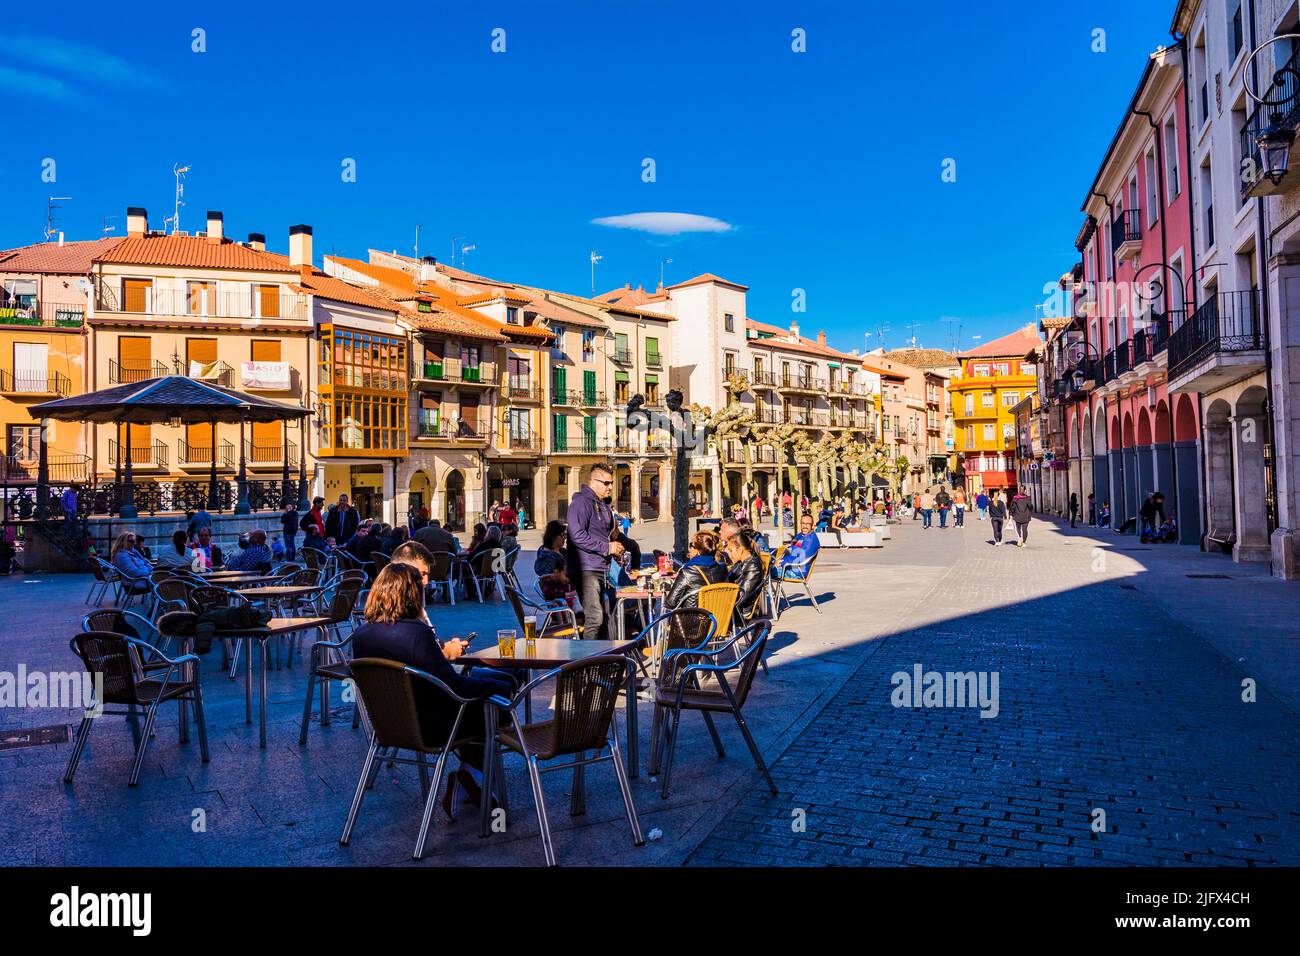 Terrazze vivaci. Plaza Mayor - Piazza principale. Aranda de Duero, Burgos, Castilla y León, Spagna, Europa Foto Stock